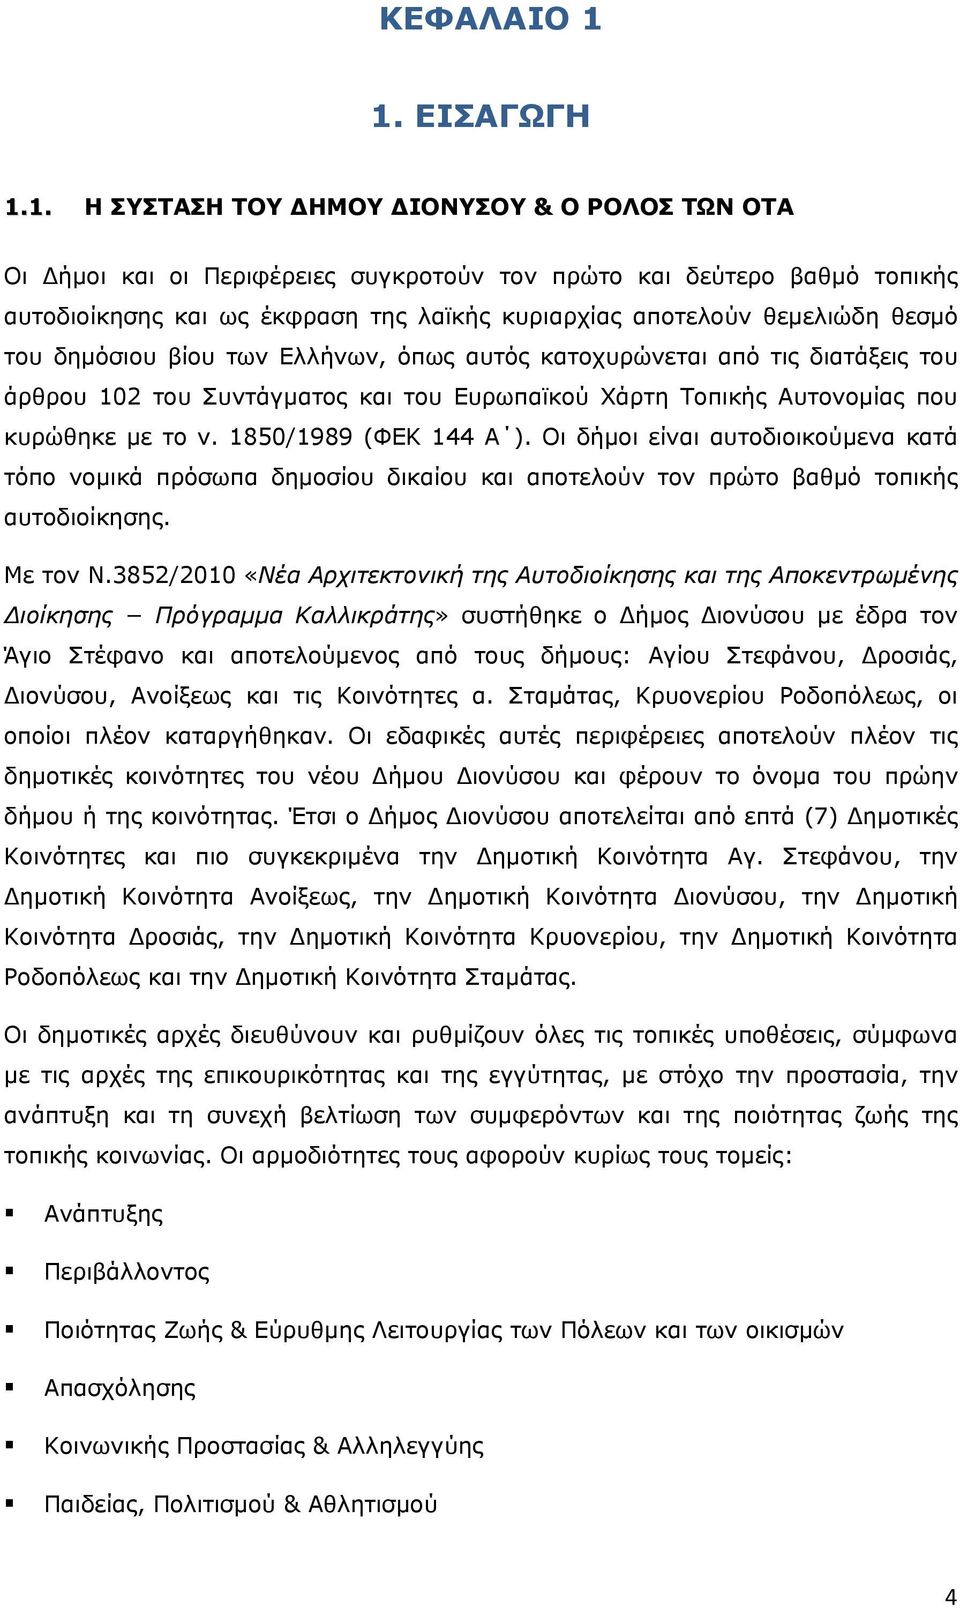 θεμελιώδη θεσμό του δημόσιου βίου των Ελλήνων, όπως αυτός κατοχυρώνεται από τις διατάξεις του άρθρου 102 του Συντάγματος και του Ευρωπαϊκού Χάρτη Τοπικής Αυτονομίας που κυρώθηκε με το ν.